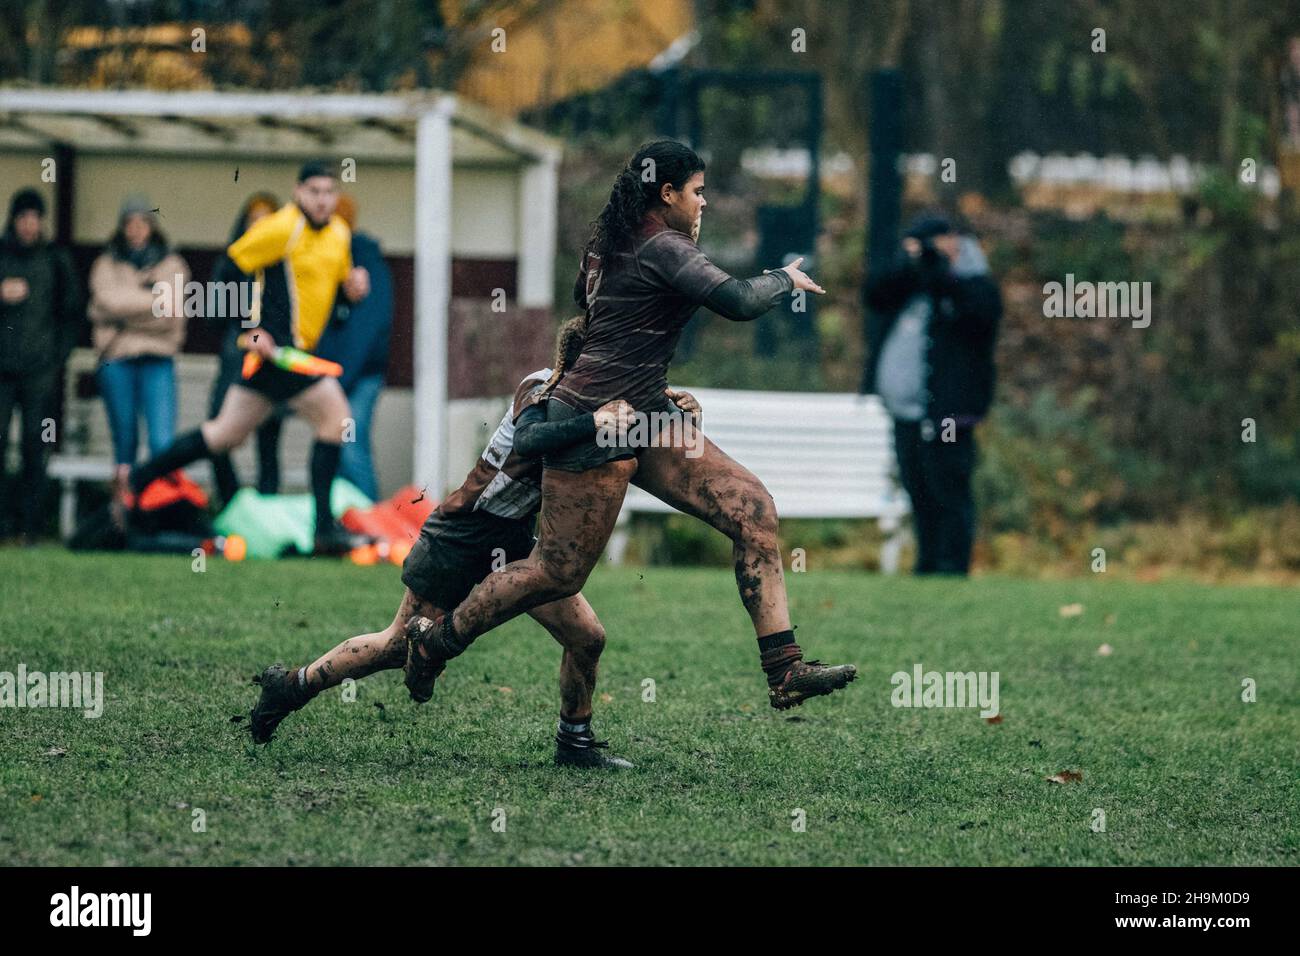 Köln, Rugby Park, 04.12.21: Featurebilder, Aktionsbilder, im Spiel der 1. Rugbyliga der Frauen RSV Köln vs. FC St. Pauli, Stock Photo